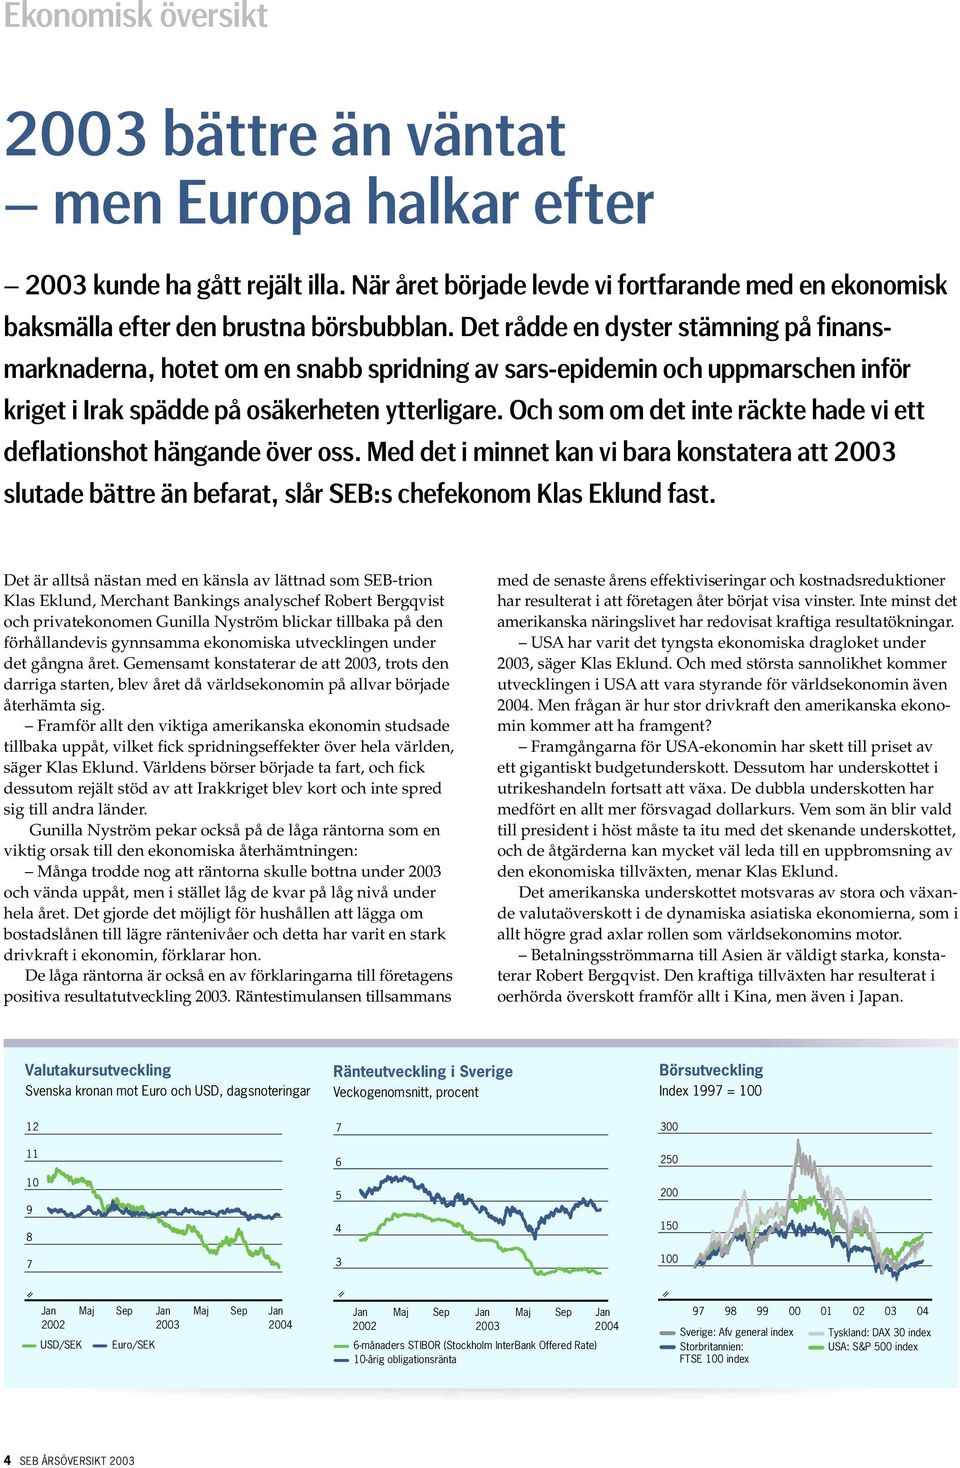 Och som om det inte räckte hade vi ett deflationshot hängande över oss. Med det i minnet kan vi bara konstatera att 2003 slutade bättre än befarat, slår SEB:s chefekonom Klas Eklund fast.